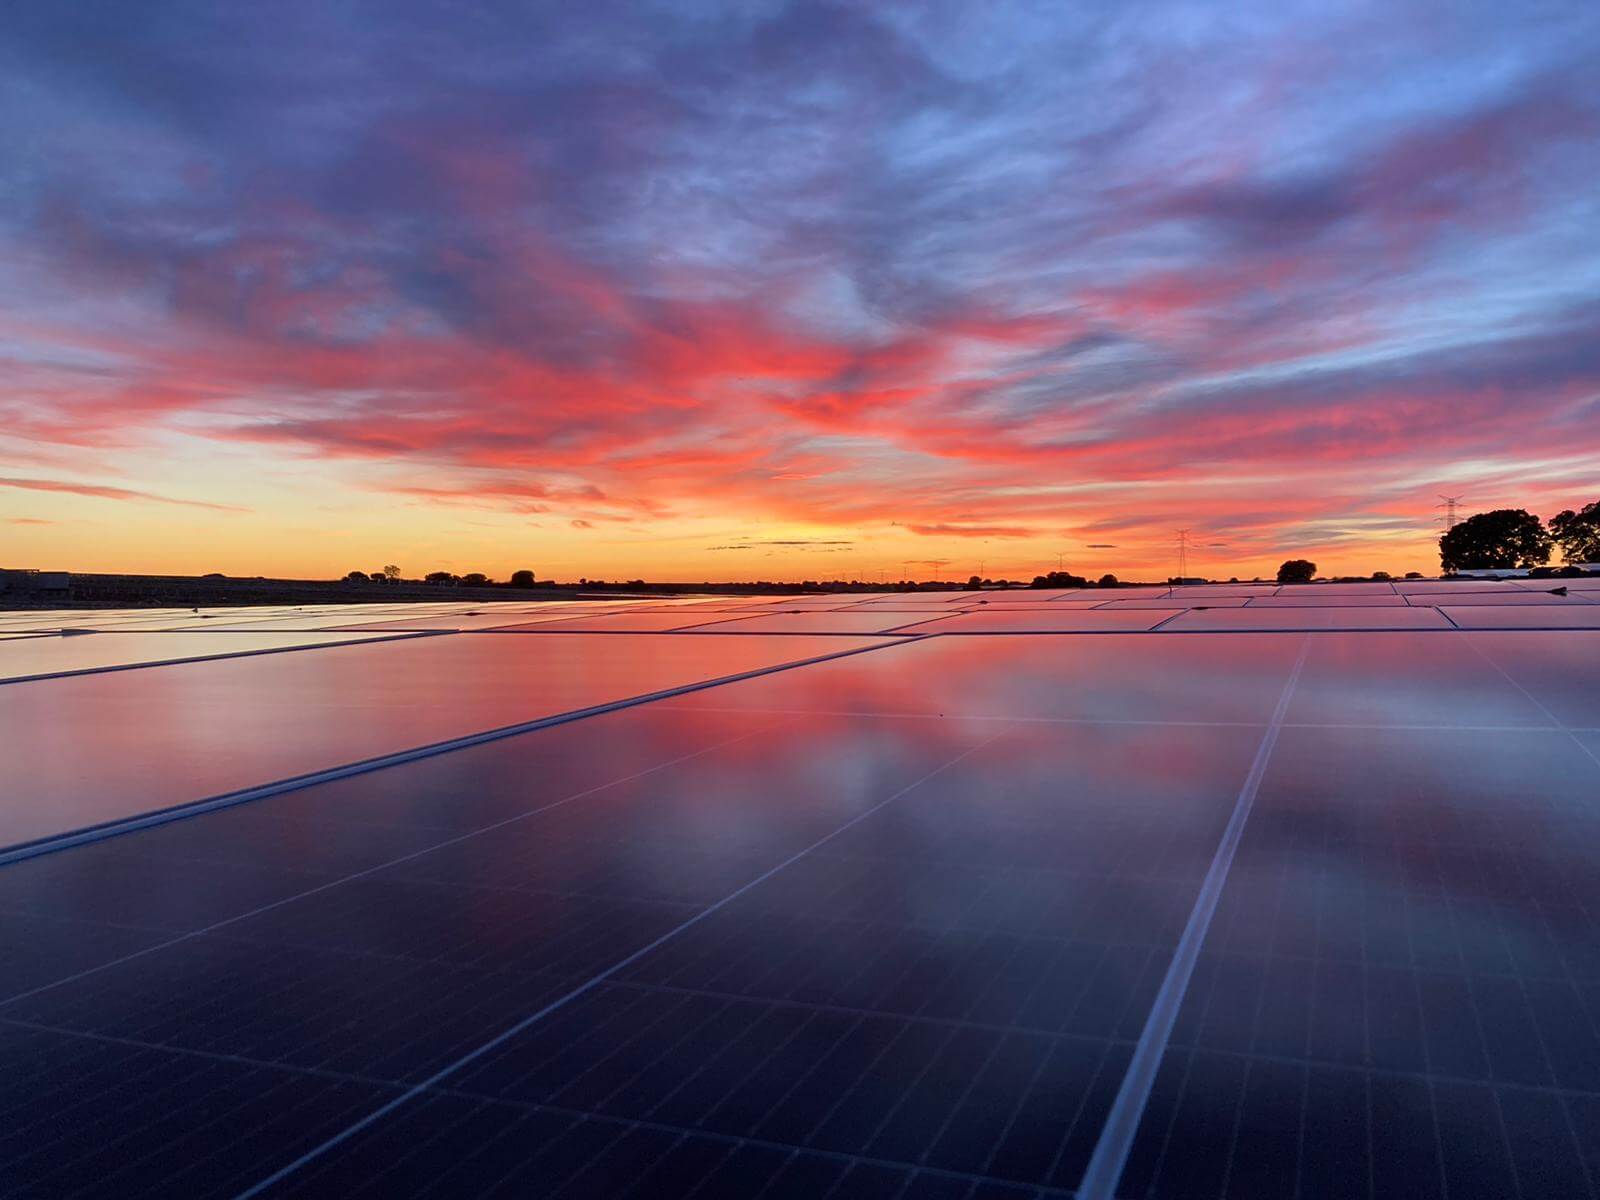 Solaria lidera la producción de energía solar fotovoltaica en la península ibérica y obtiene DIAs para 375 MW en Portugal